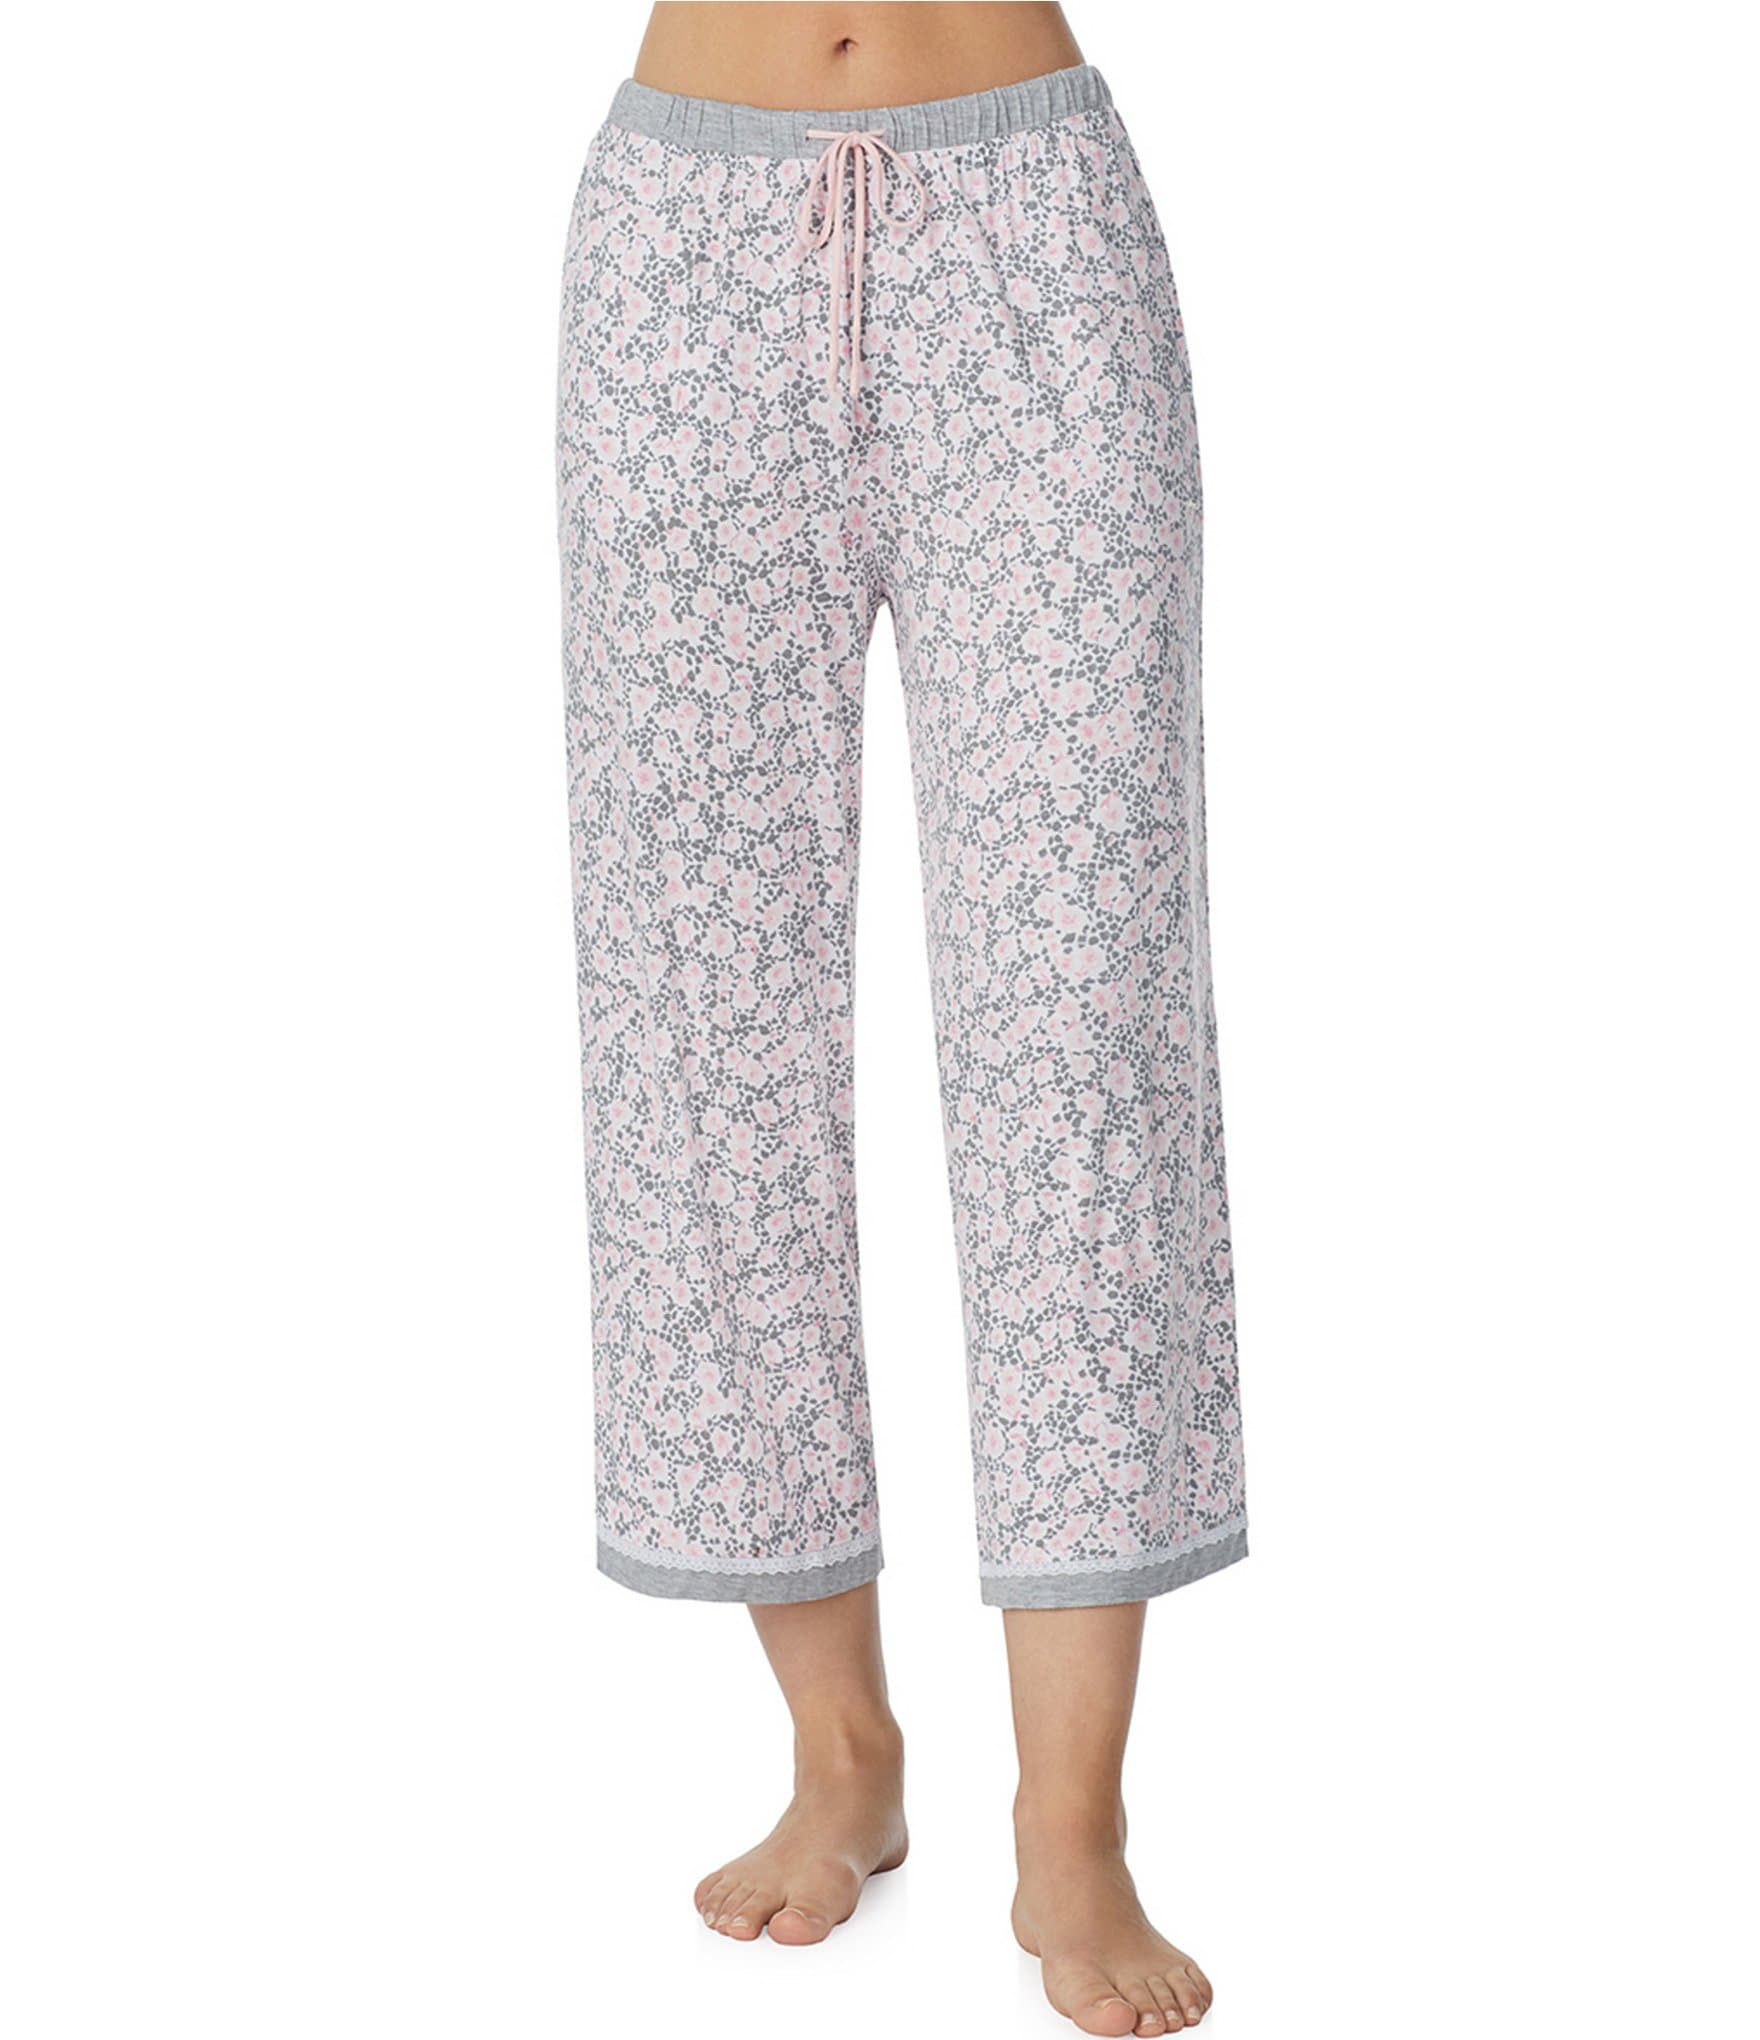 Kensie Women's Pajama & Sleep Pants